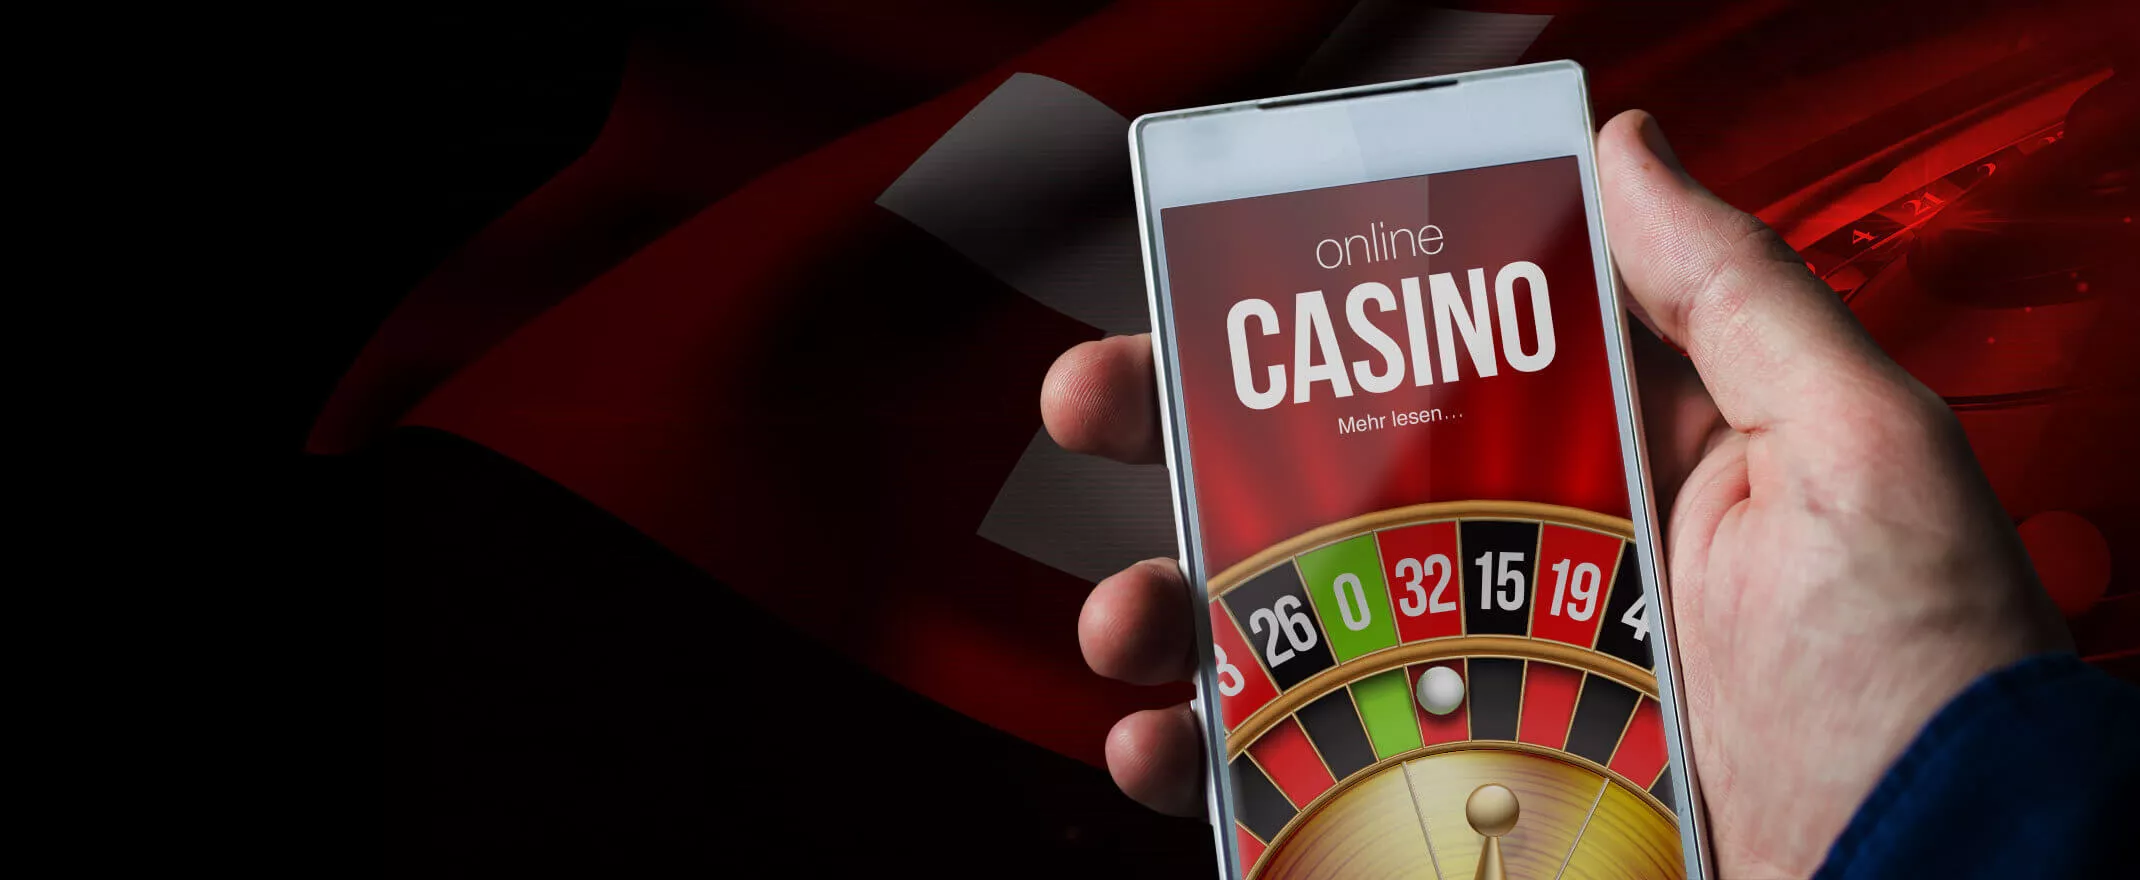 Alles, was du über beste Online Casinos wissen wolltest und es dir zu peinlich war zu fragen